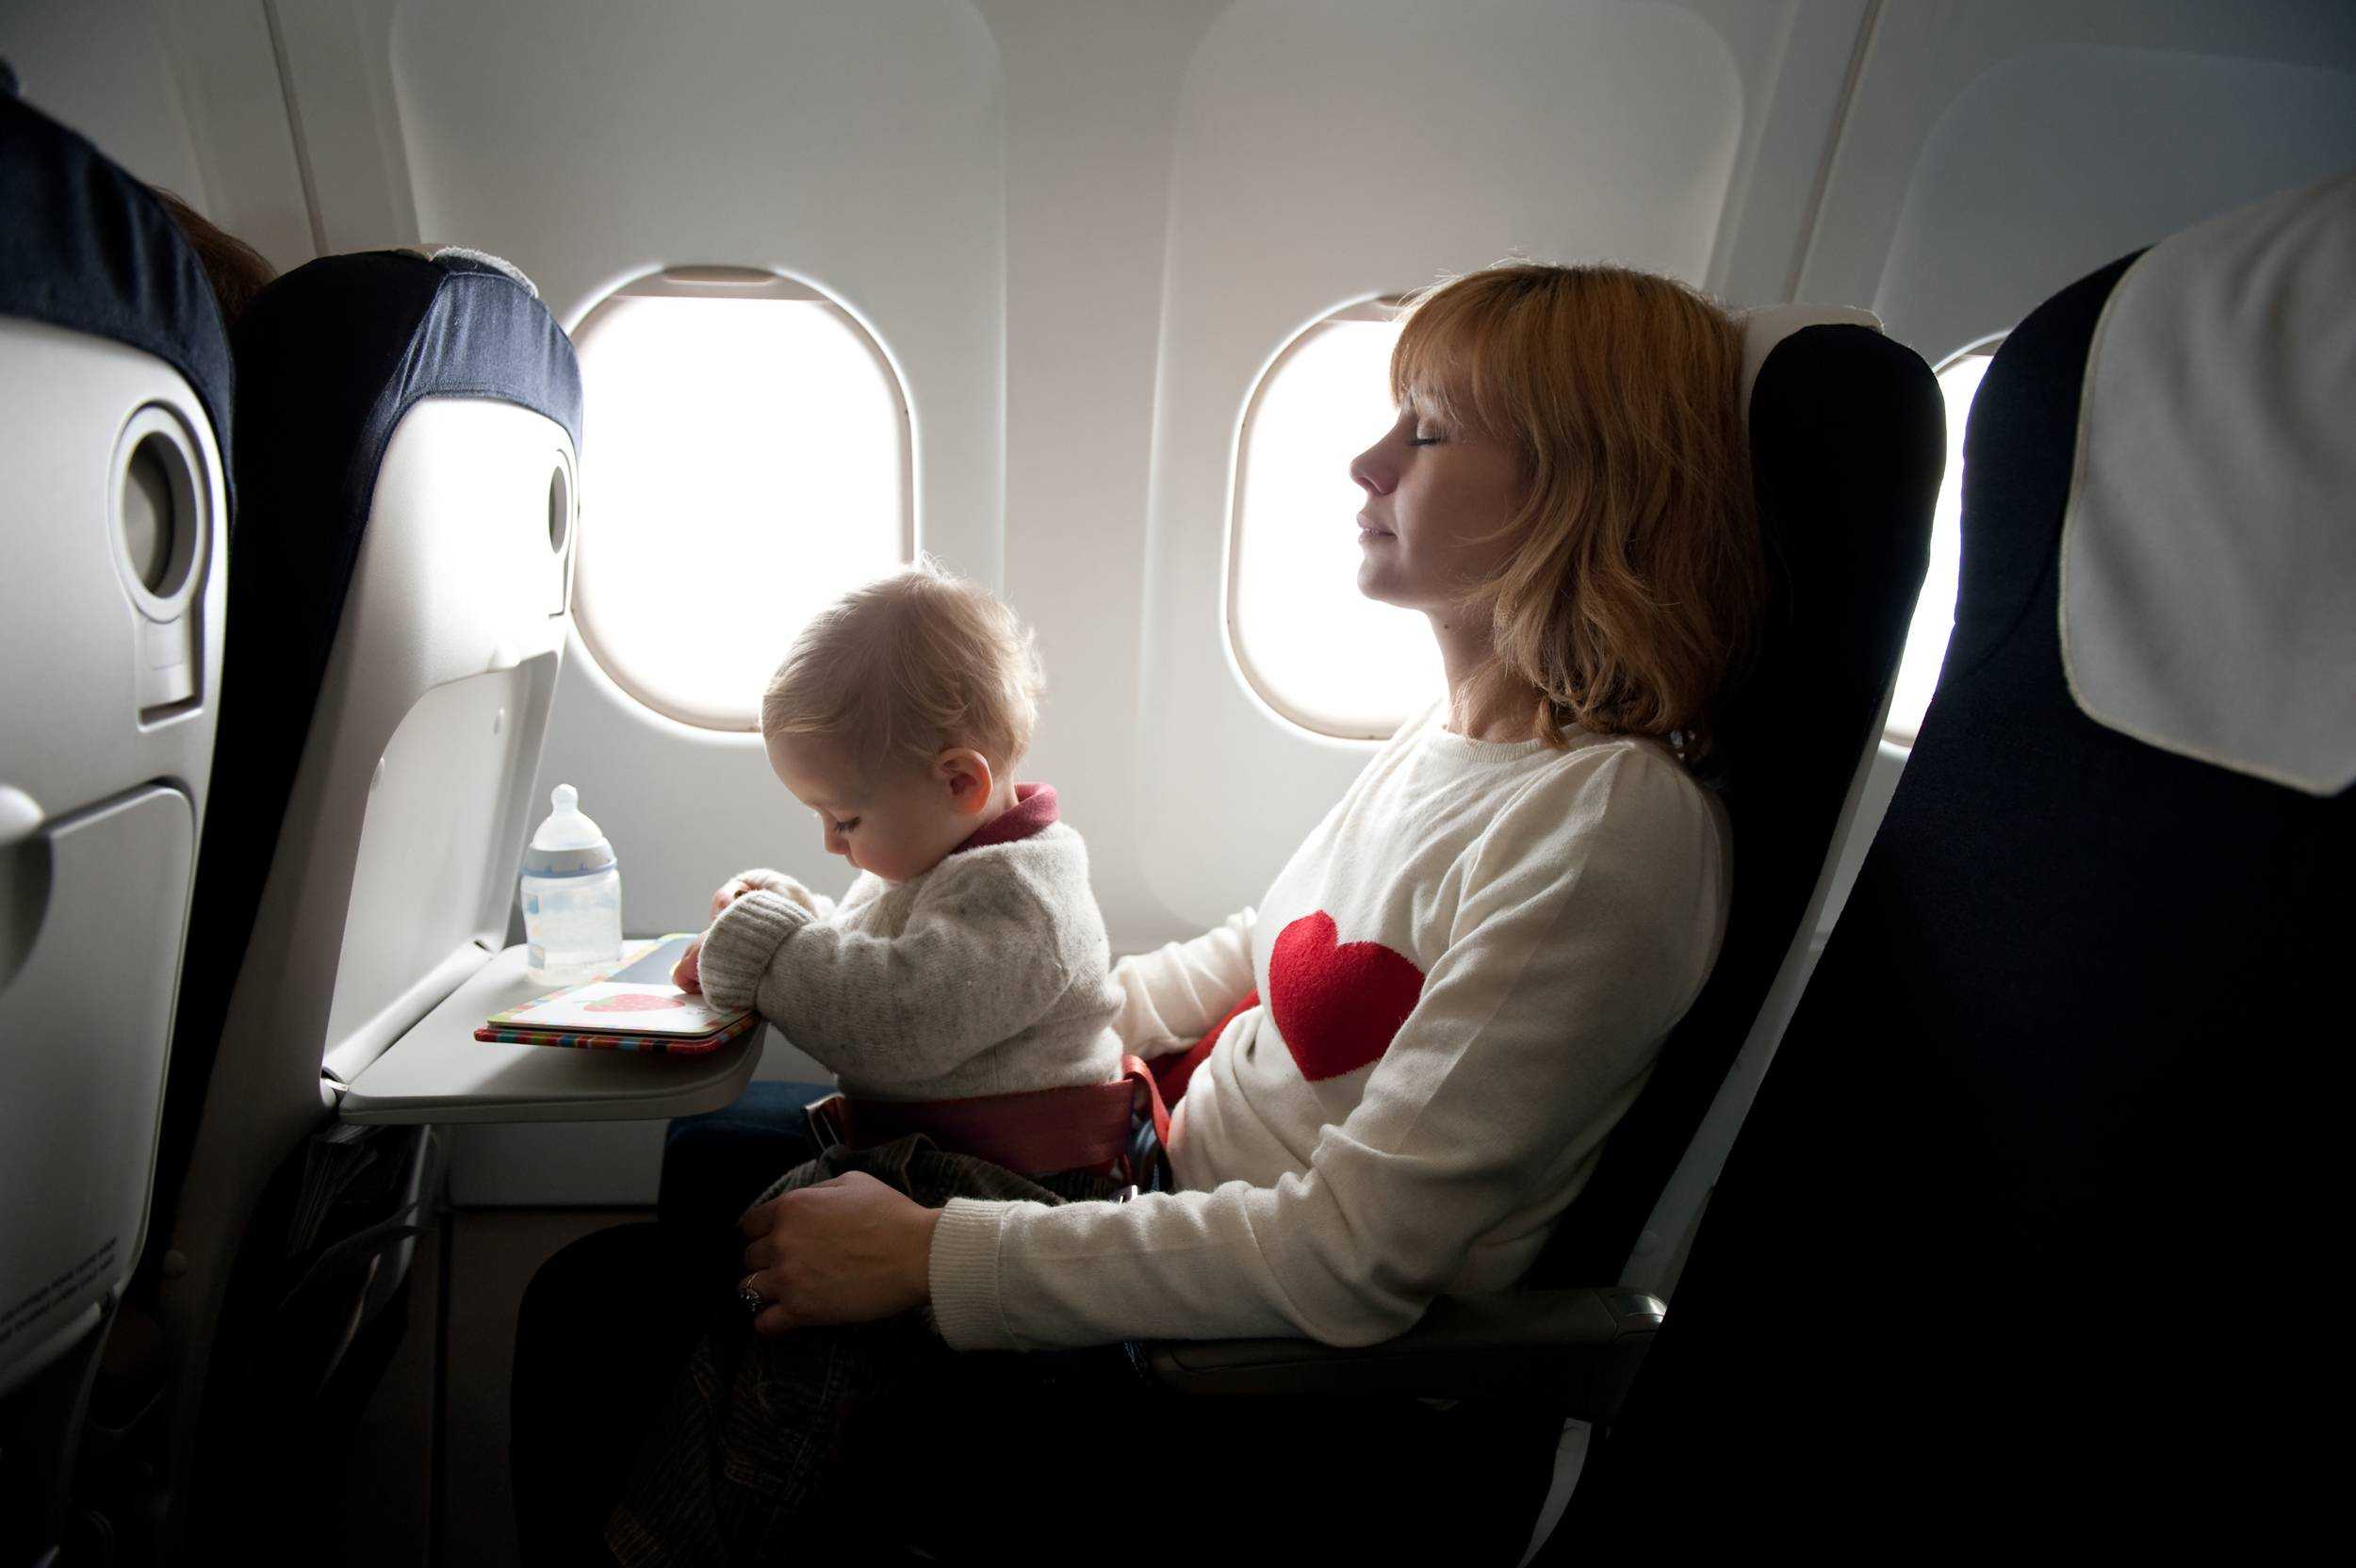 Самолеты для 1 ребенка. Самолет для детей. Места в самолете для младенцев. Путешествие на самолете. Пассажиры с детьми в самолете.